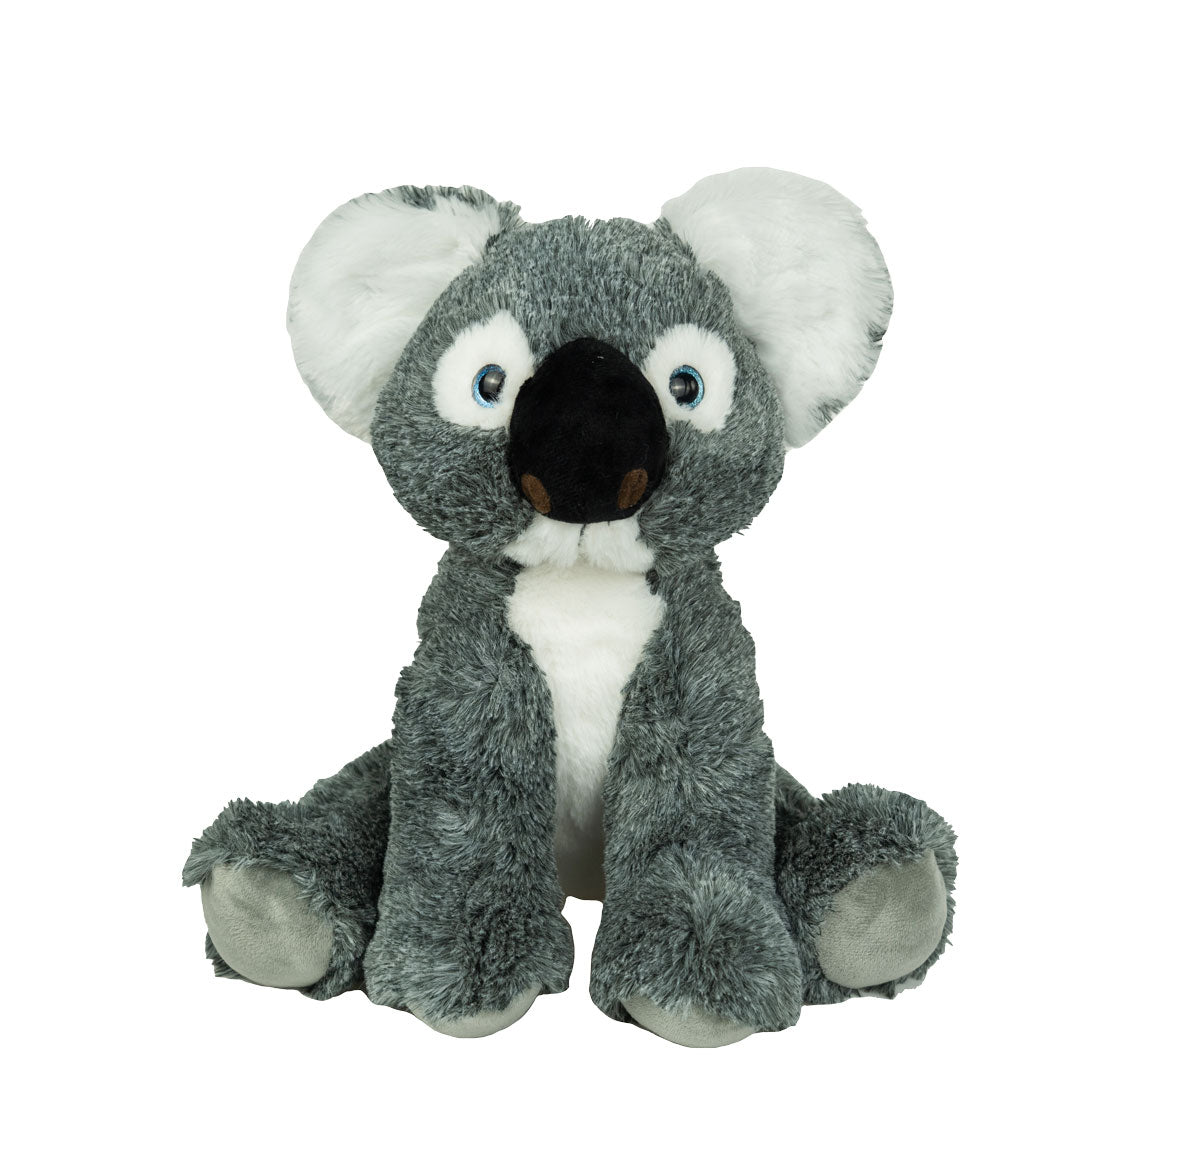 16" Plush Stuffed Koala Bear, Kids Soft Toy